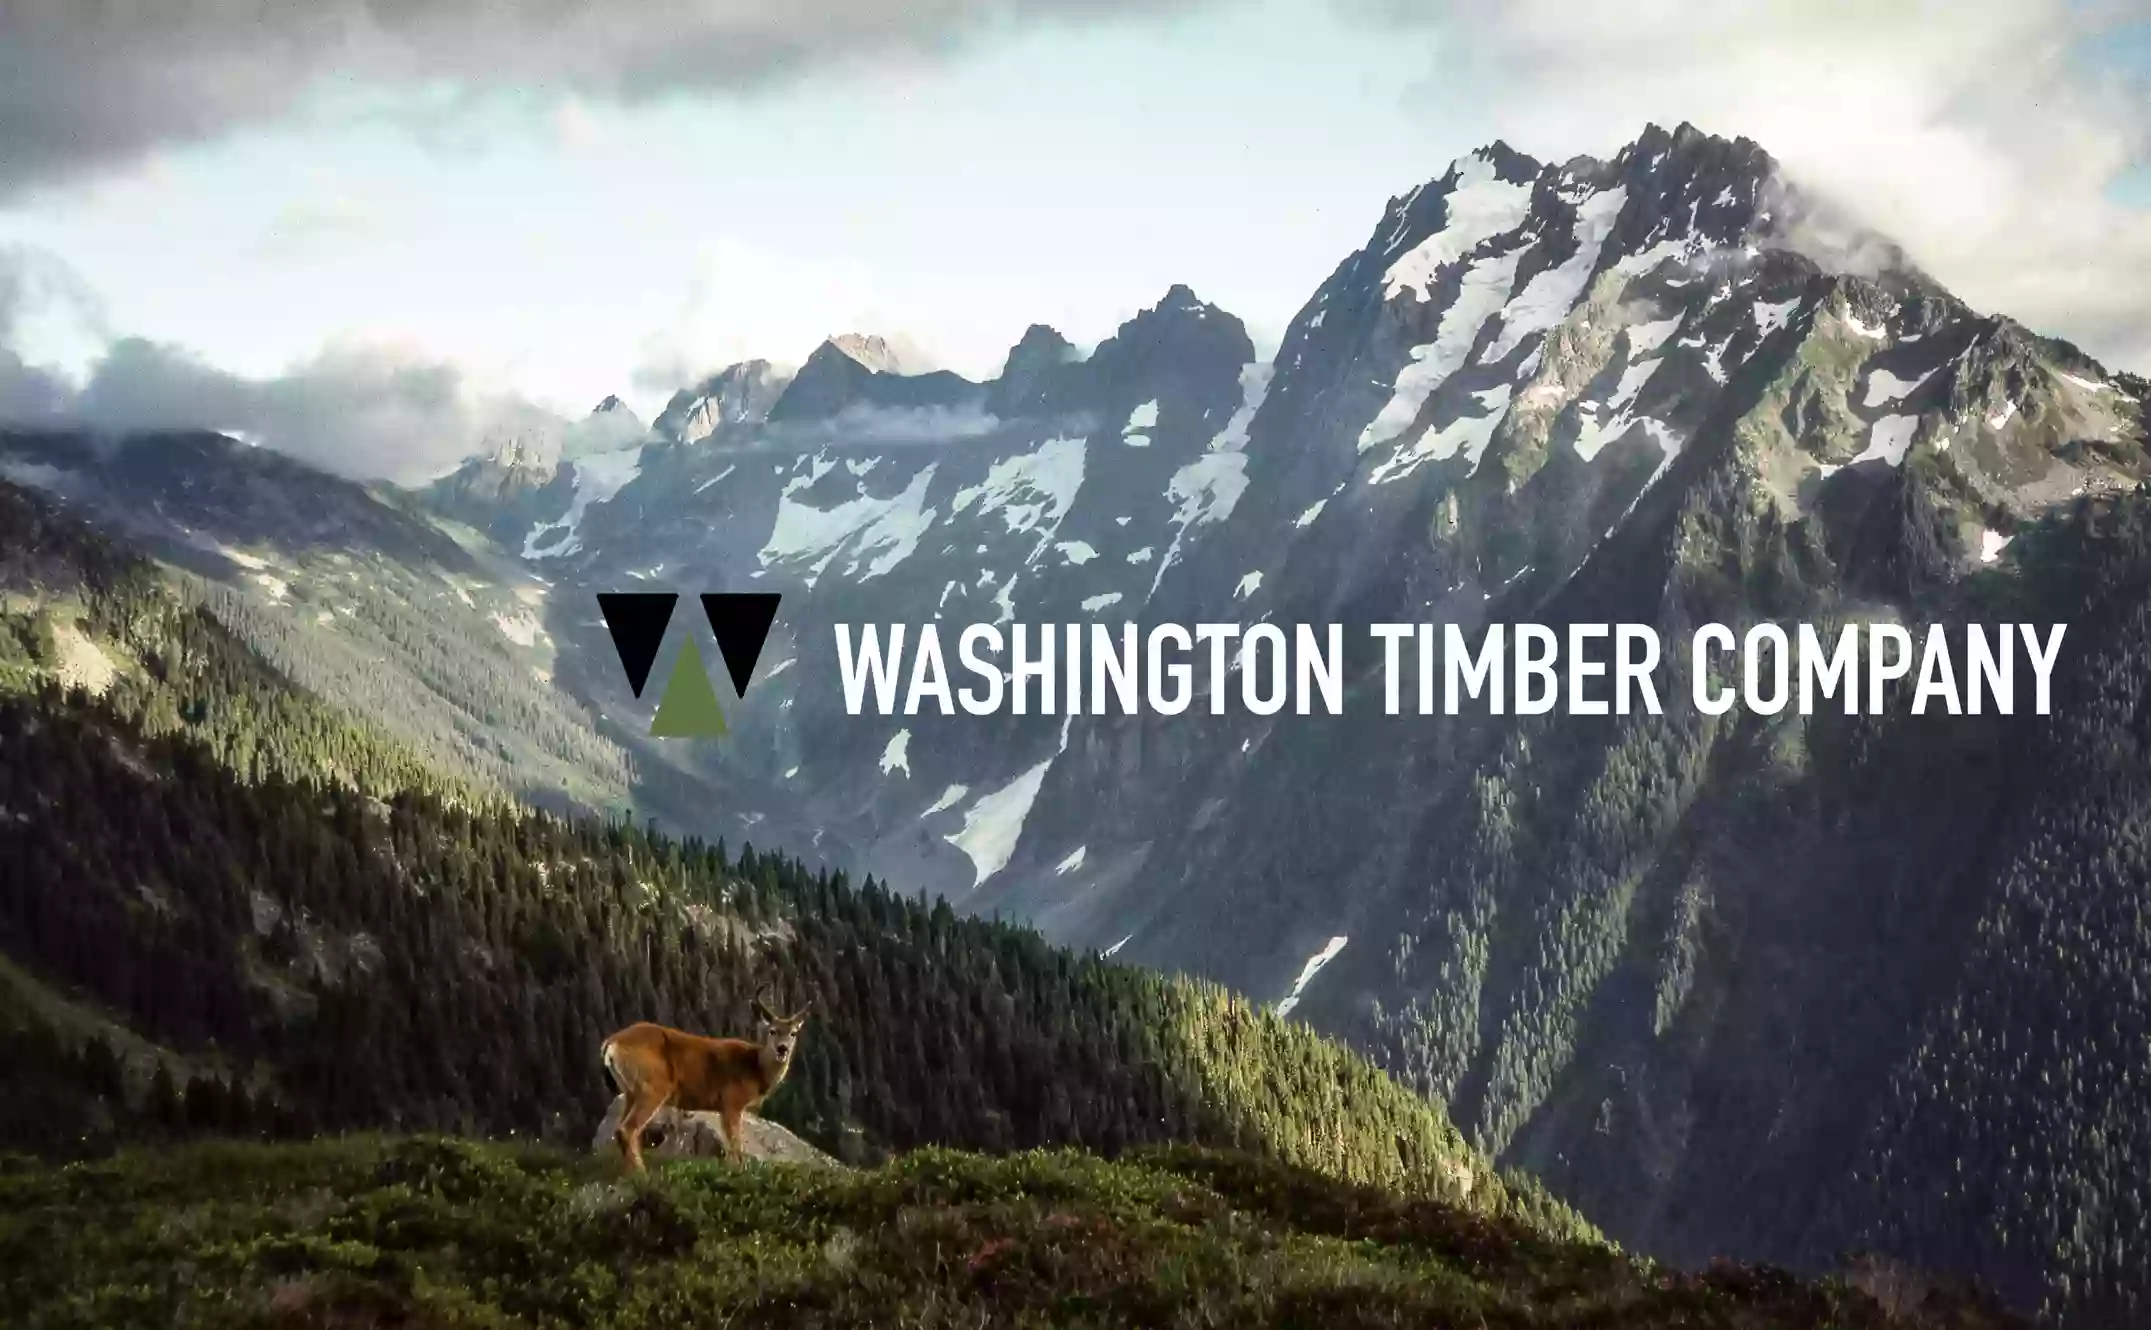 Washington Timber Company